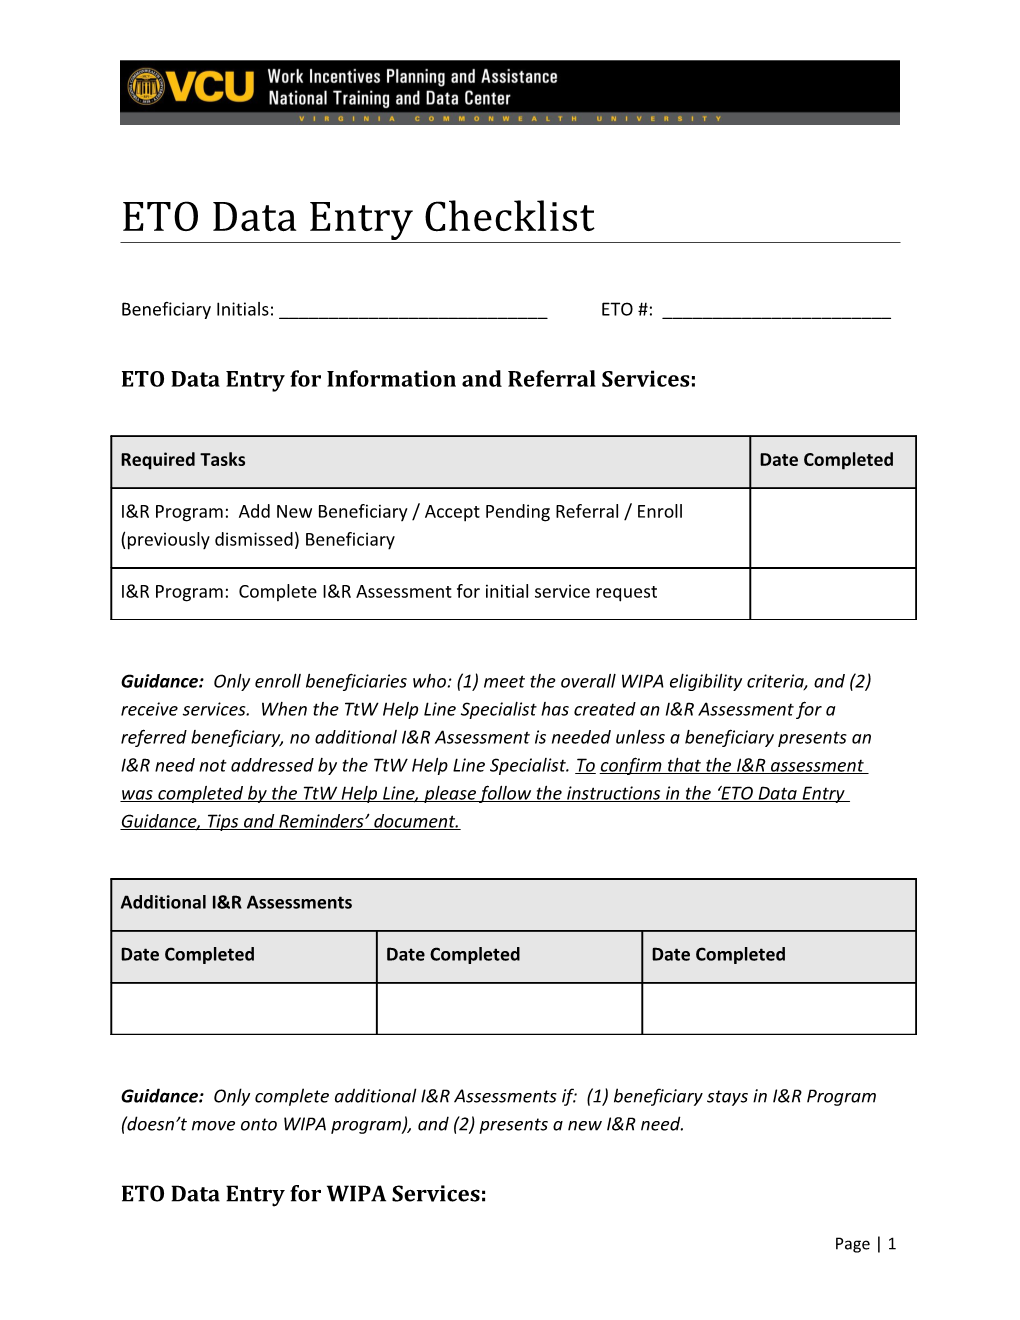 ETO Data Entry Checklist